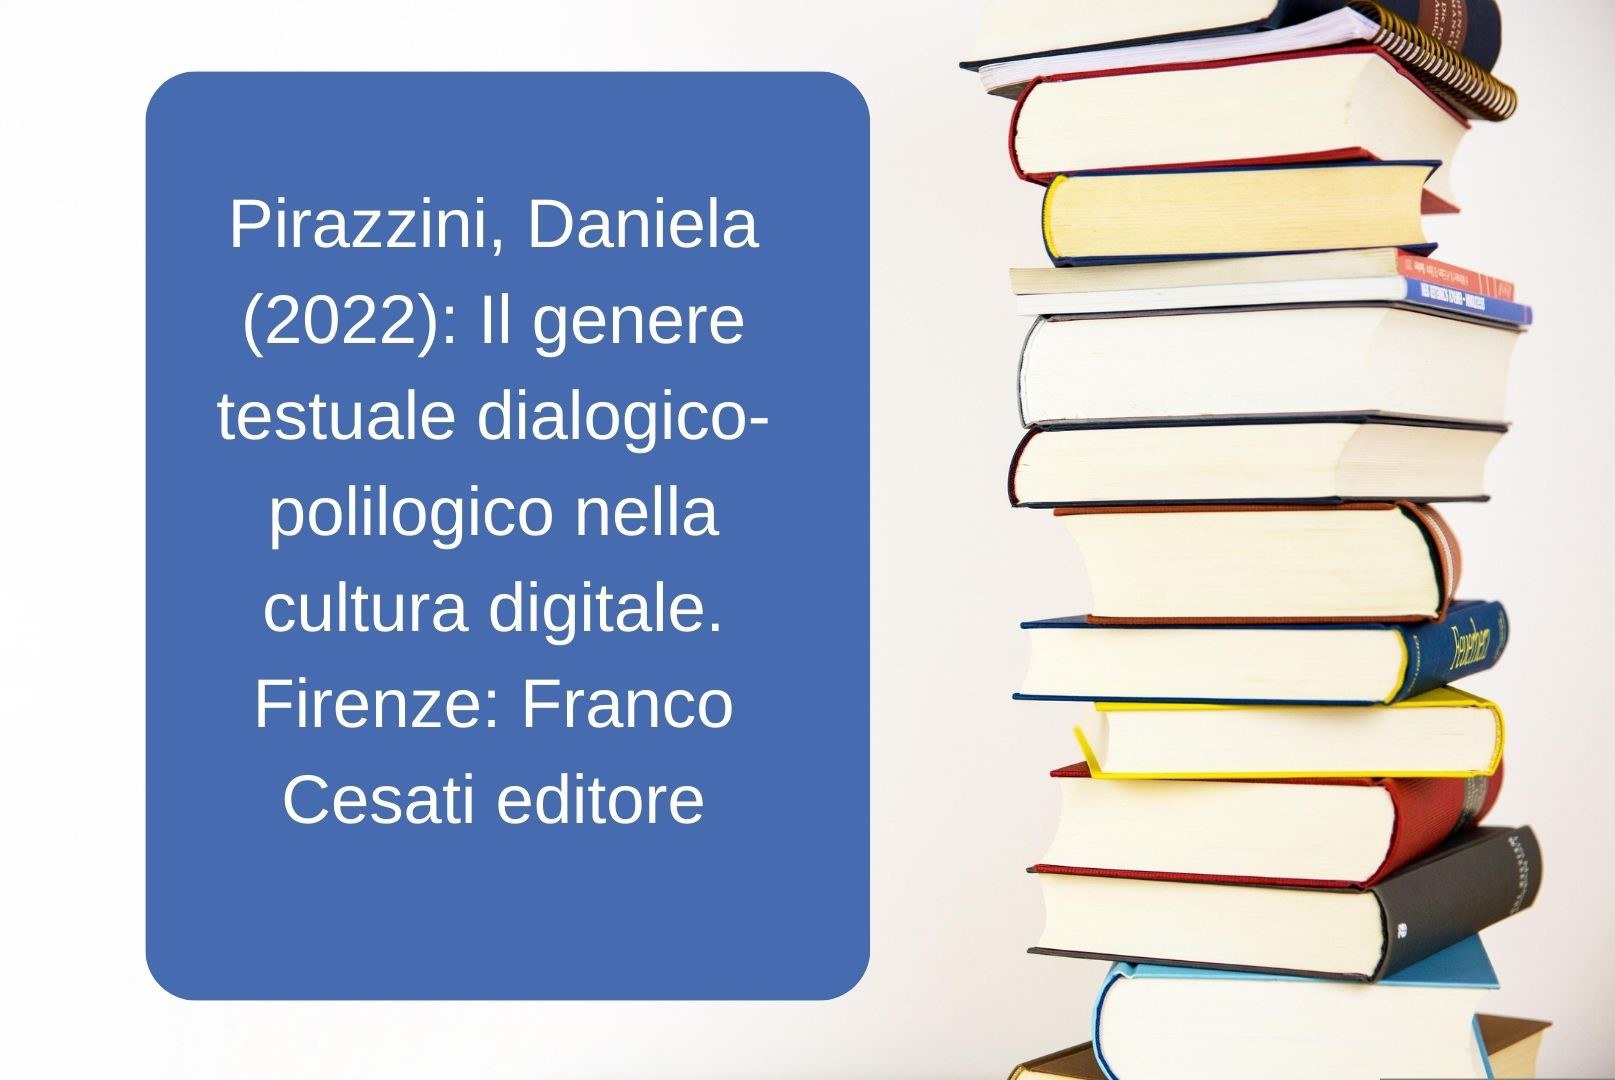 Pirazzini, Daniela (2022) Il genere testuale dialogico-polilogico nella cultura digitale. Firenze Franco Cesati editore.jpg